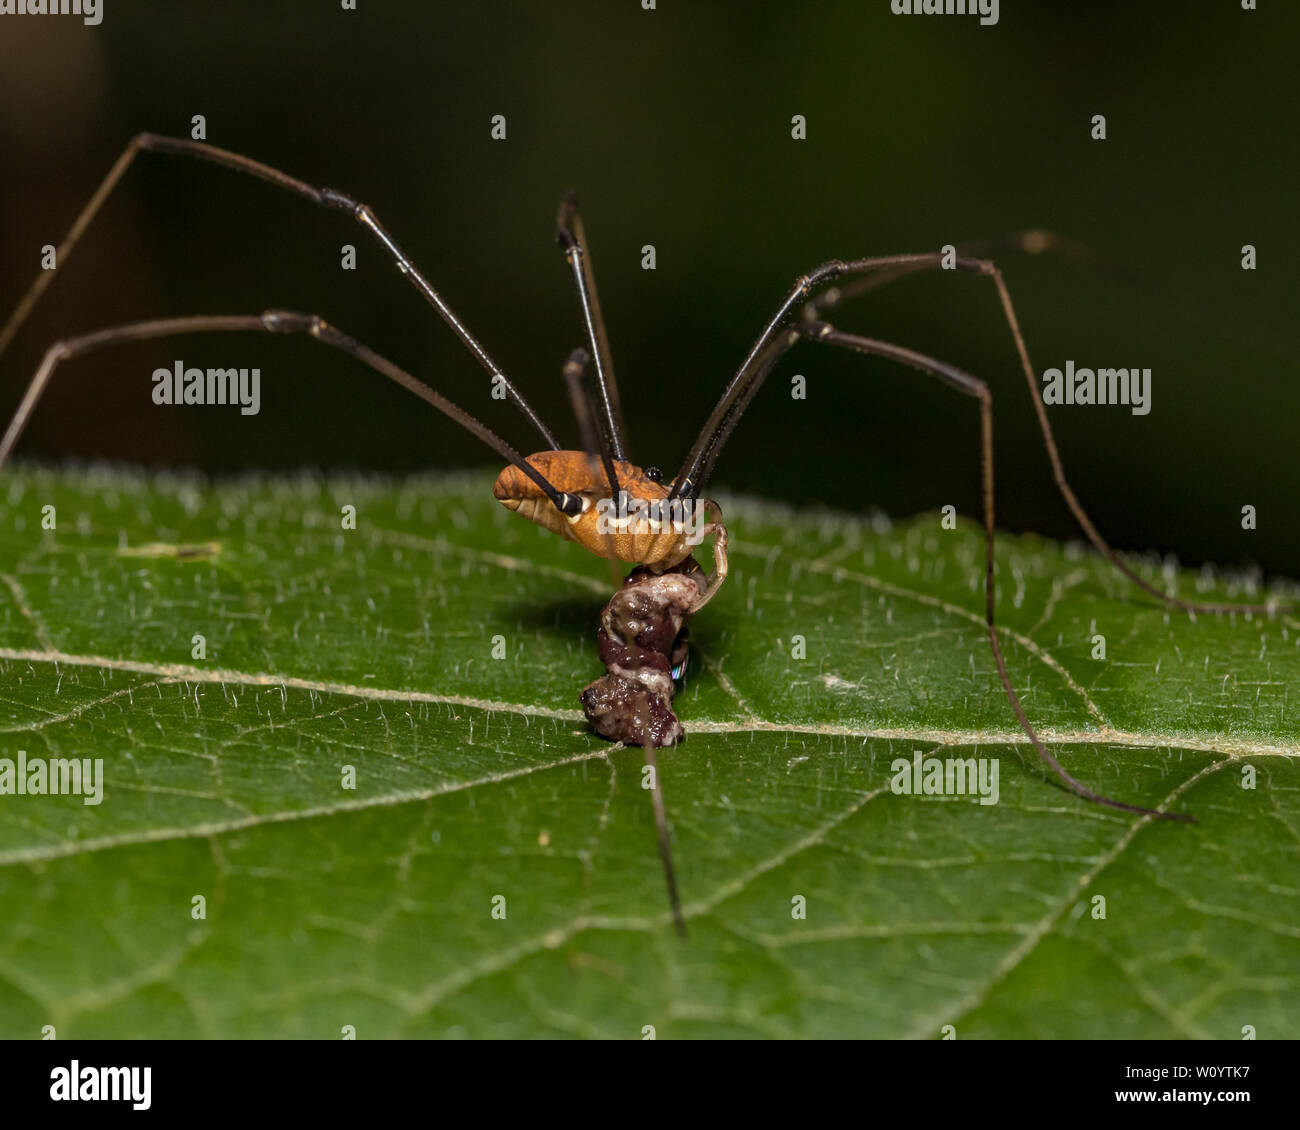 Harvestmen, comunemente chiamato Daddy Long Legs spider, mangiare un insetto mentre in piedi su una foglia Foto Stock